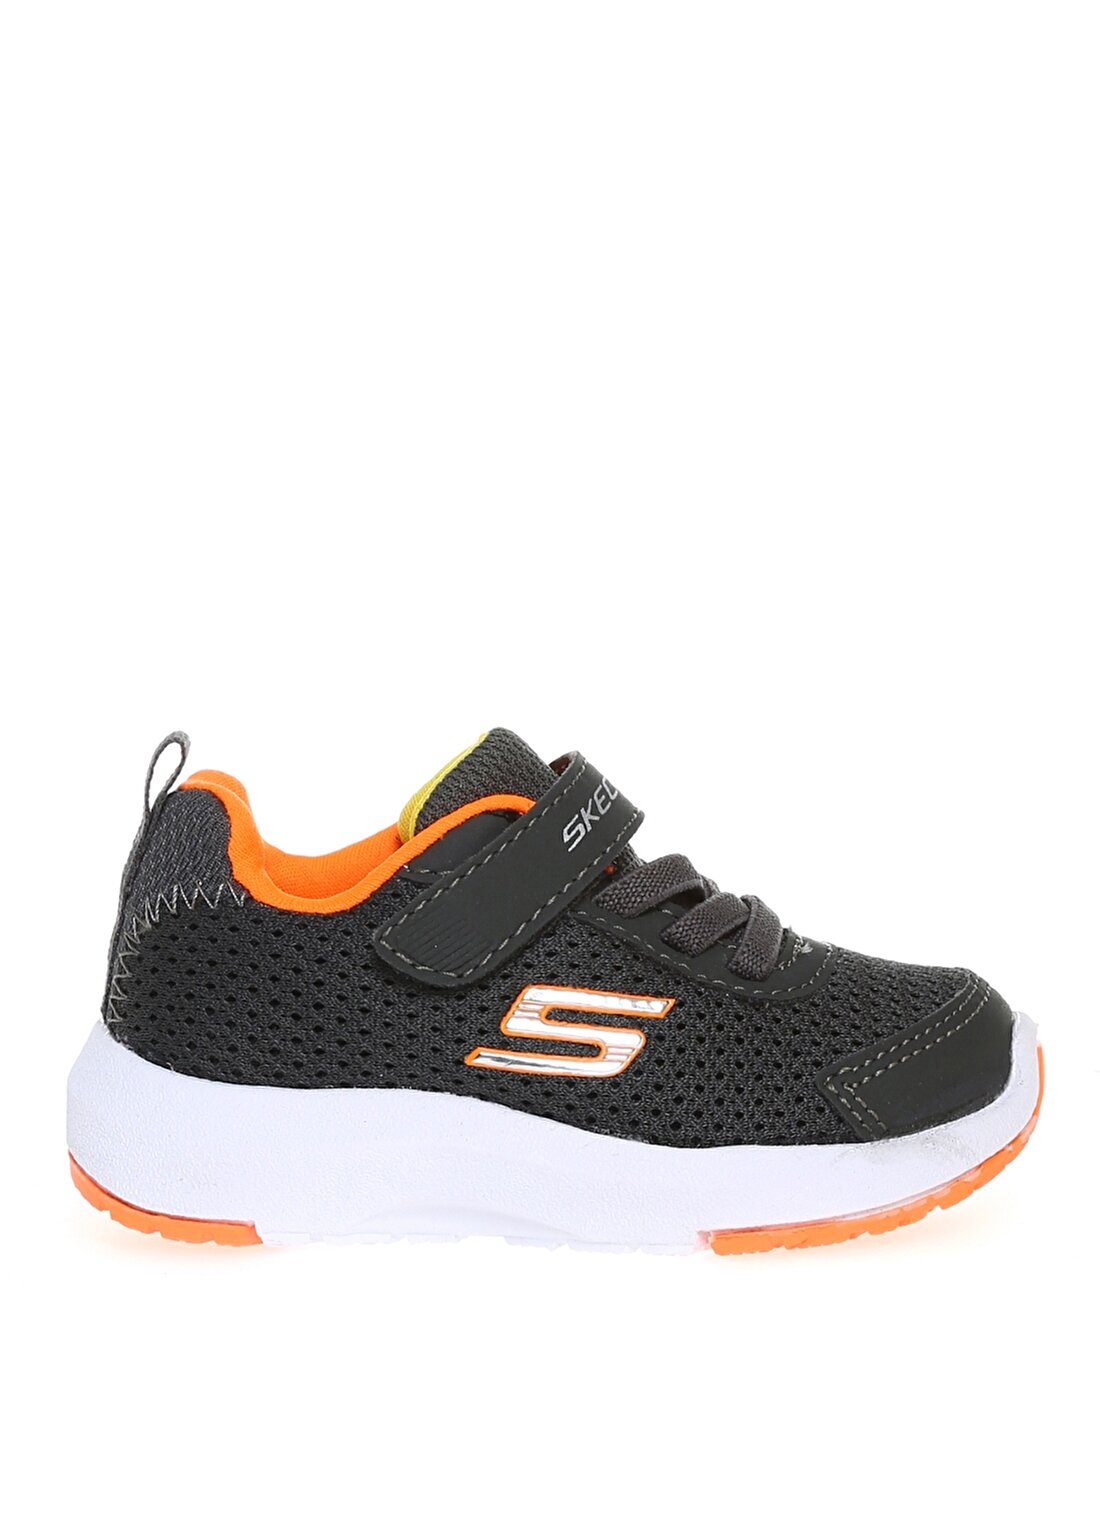 Skechers 98151N Ccor Dynamıc Tread Gri - Turuncu Erkek Çocuk Yürüyüş Ayakkabısı